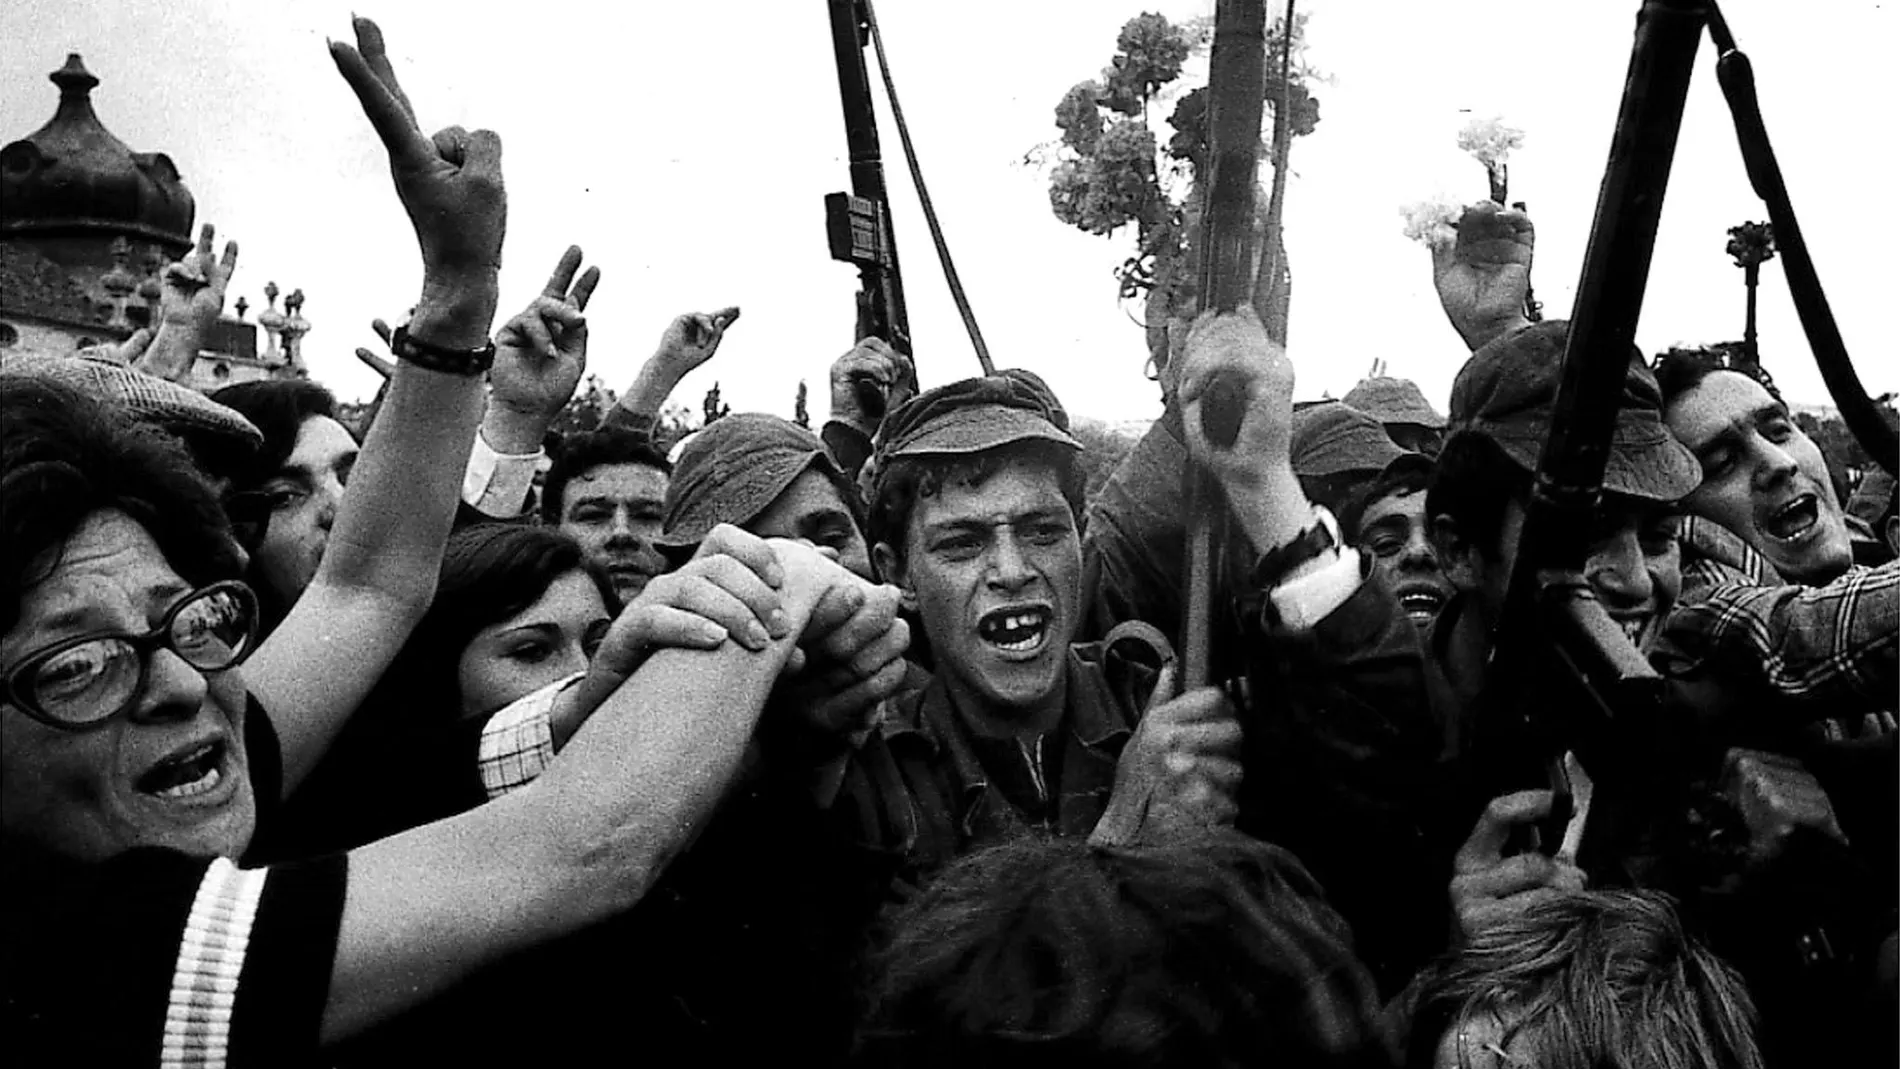 LIS05:PORTUGAL-REVOLUTION:LISBON,22APR99 - FILE PHOTO 25 APRIL 1974 - Soldados y civiles celebrando la victoria del levantamiento militar portugués el 25 de abril de 1974. (PORTUGAL OUT) jr/Photo by Eduardo Gageiro REUTERS